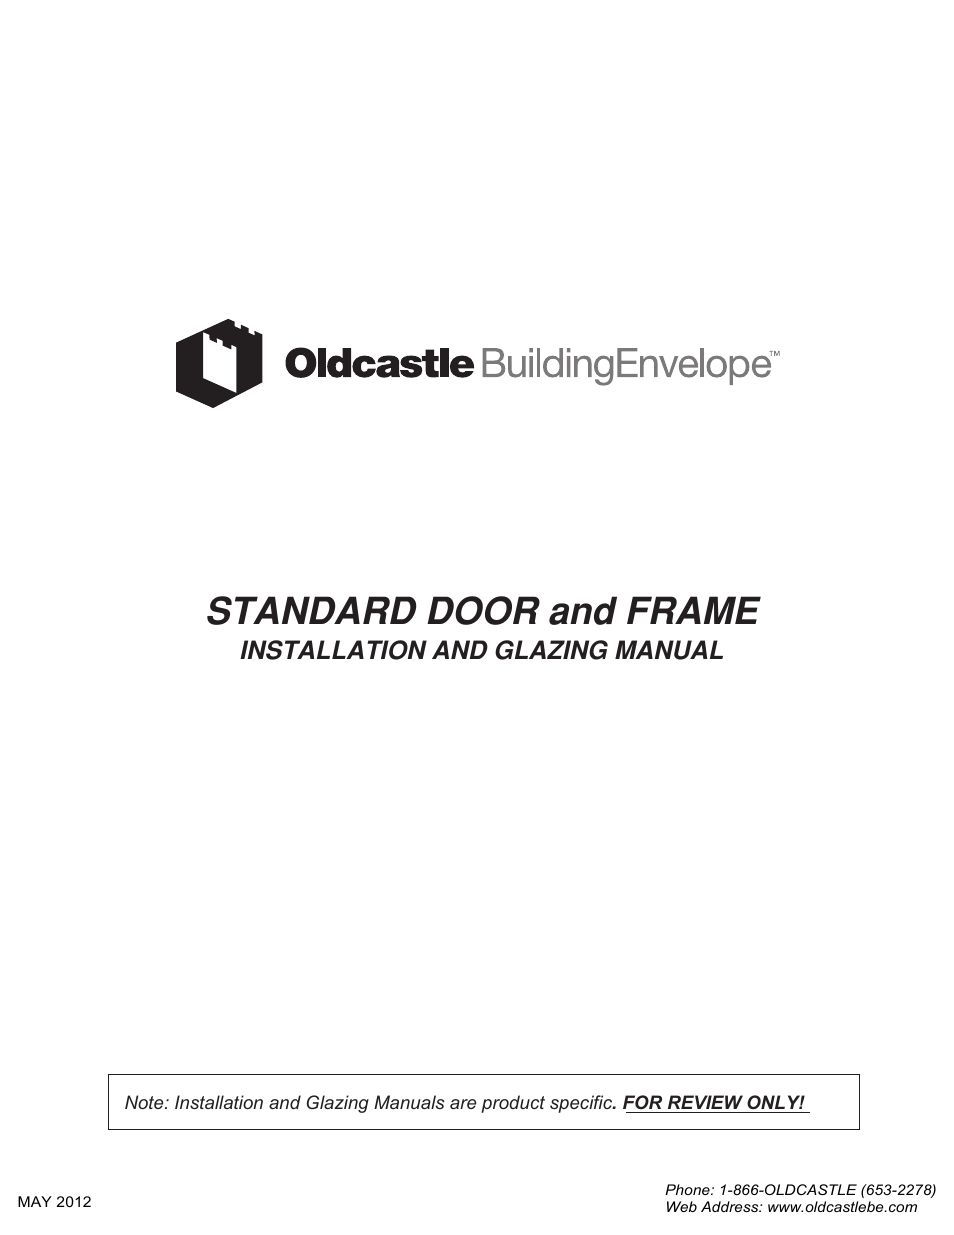 Standard Door and Frame